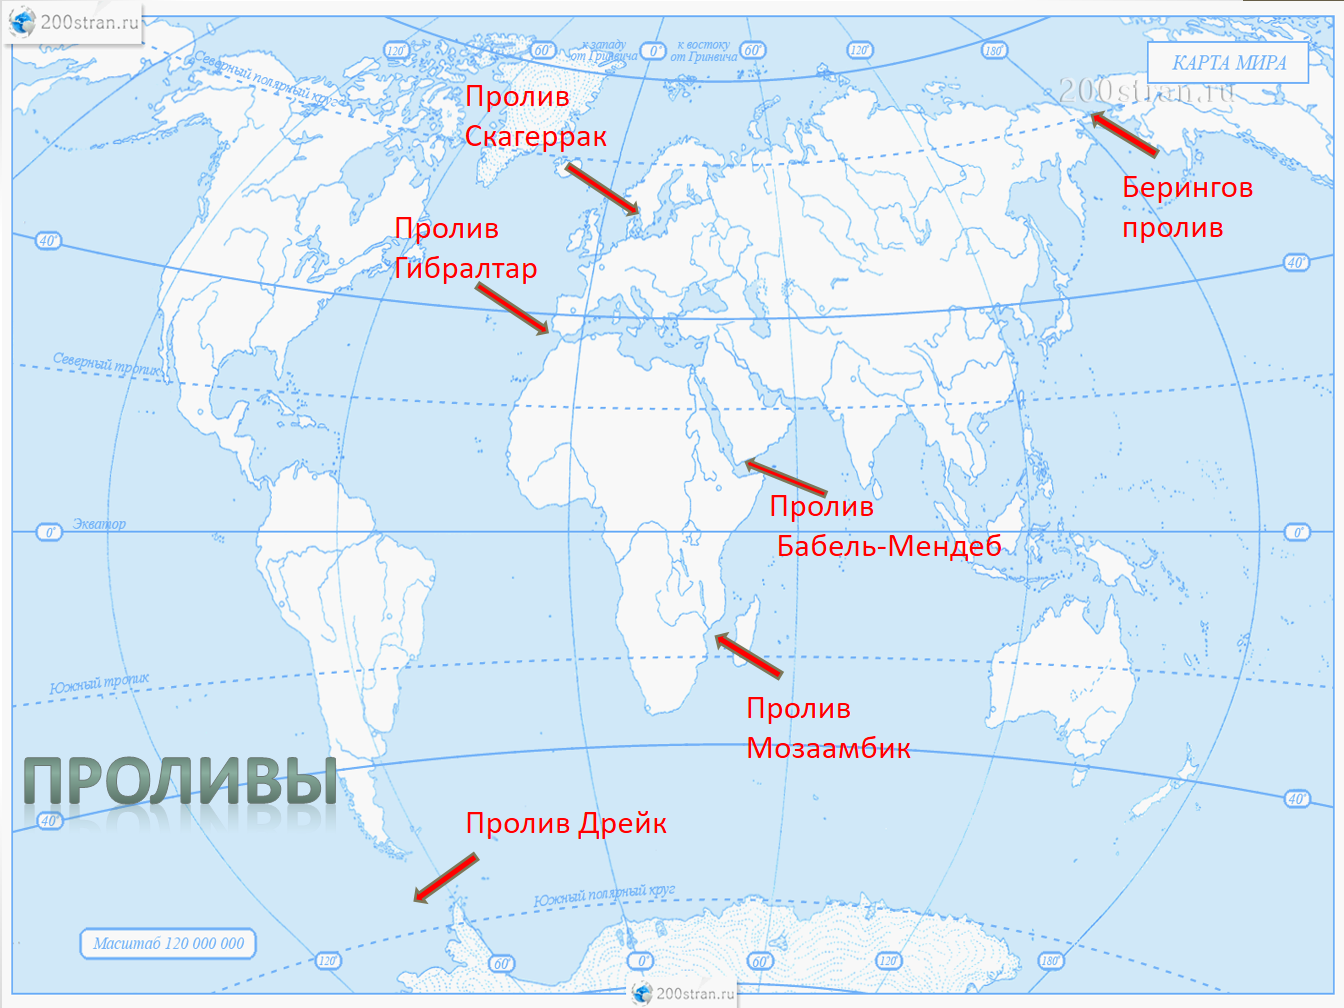 Уральские острова на карте. Джинкс Мейз бриелла Боунс. Проливы на карте с названиями.